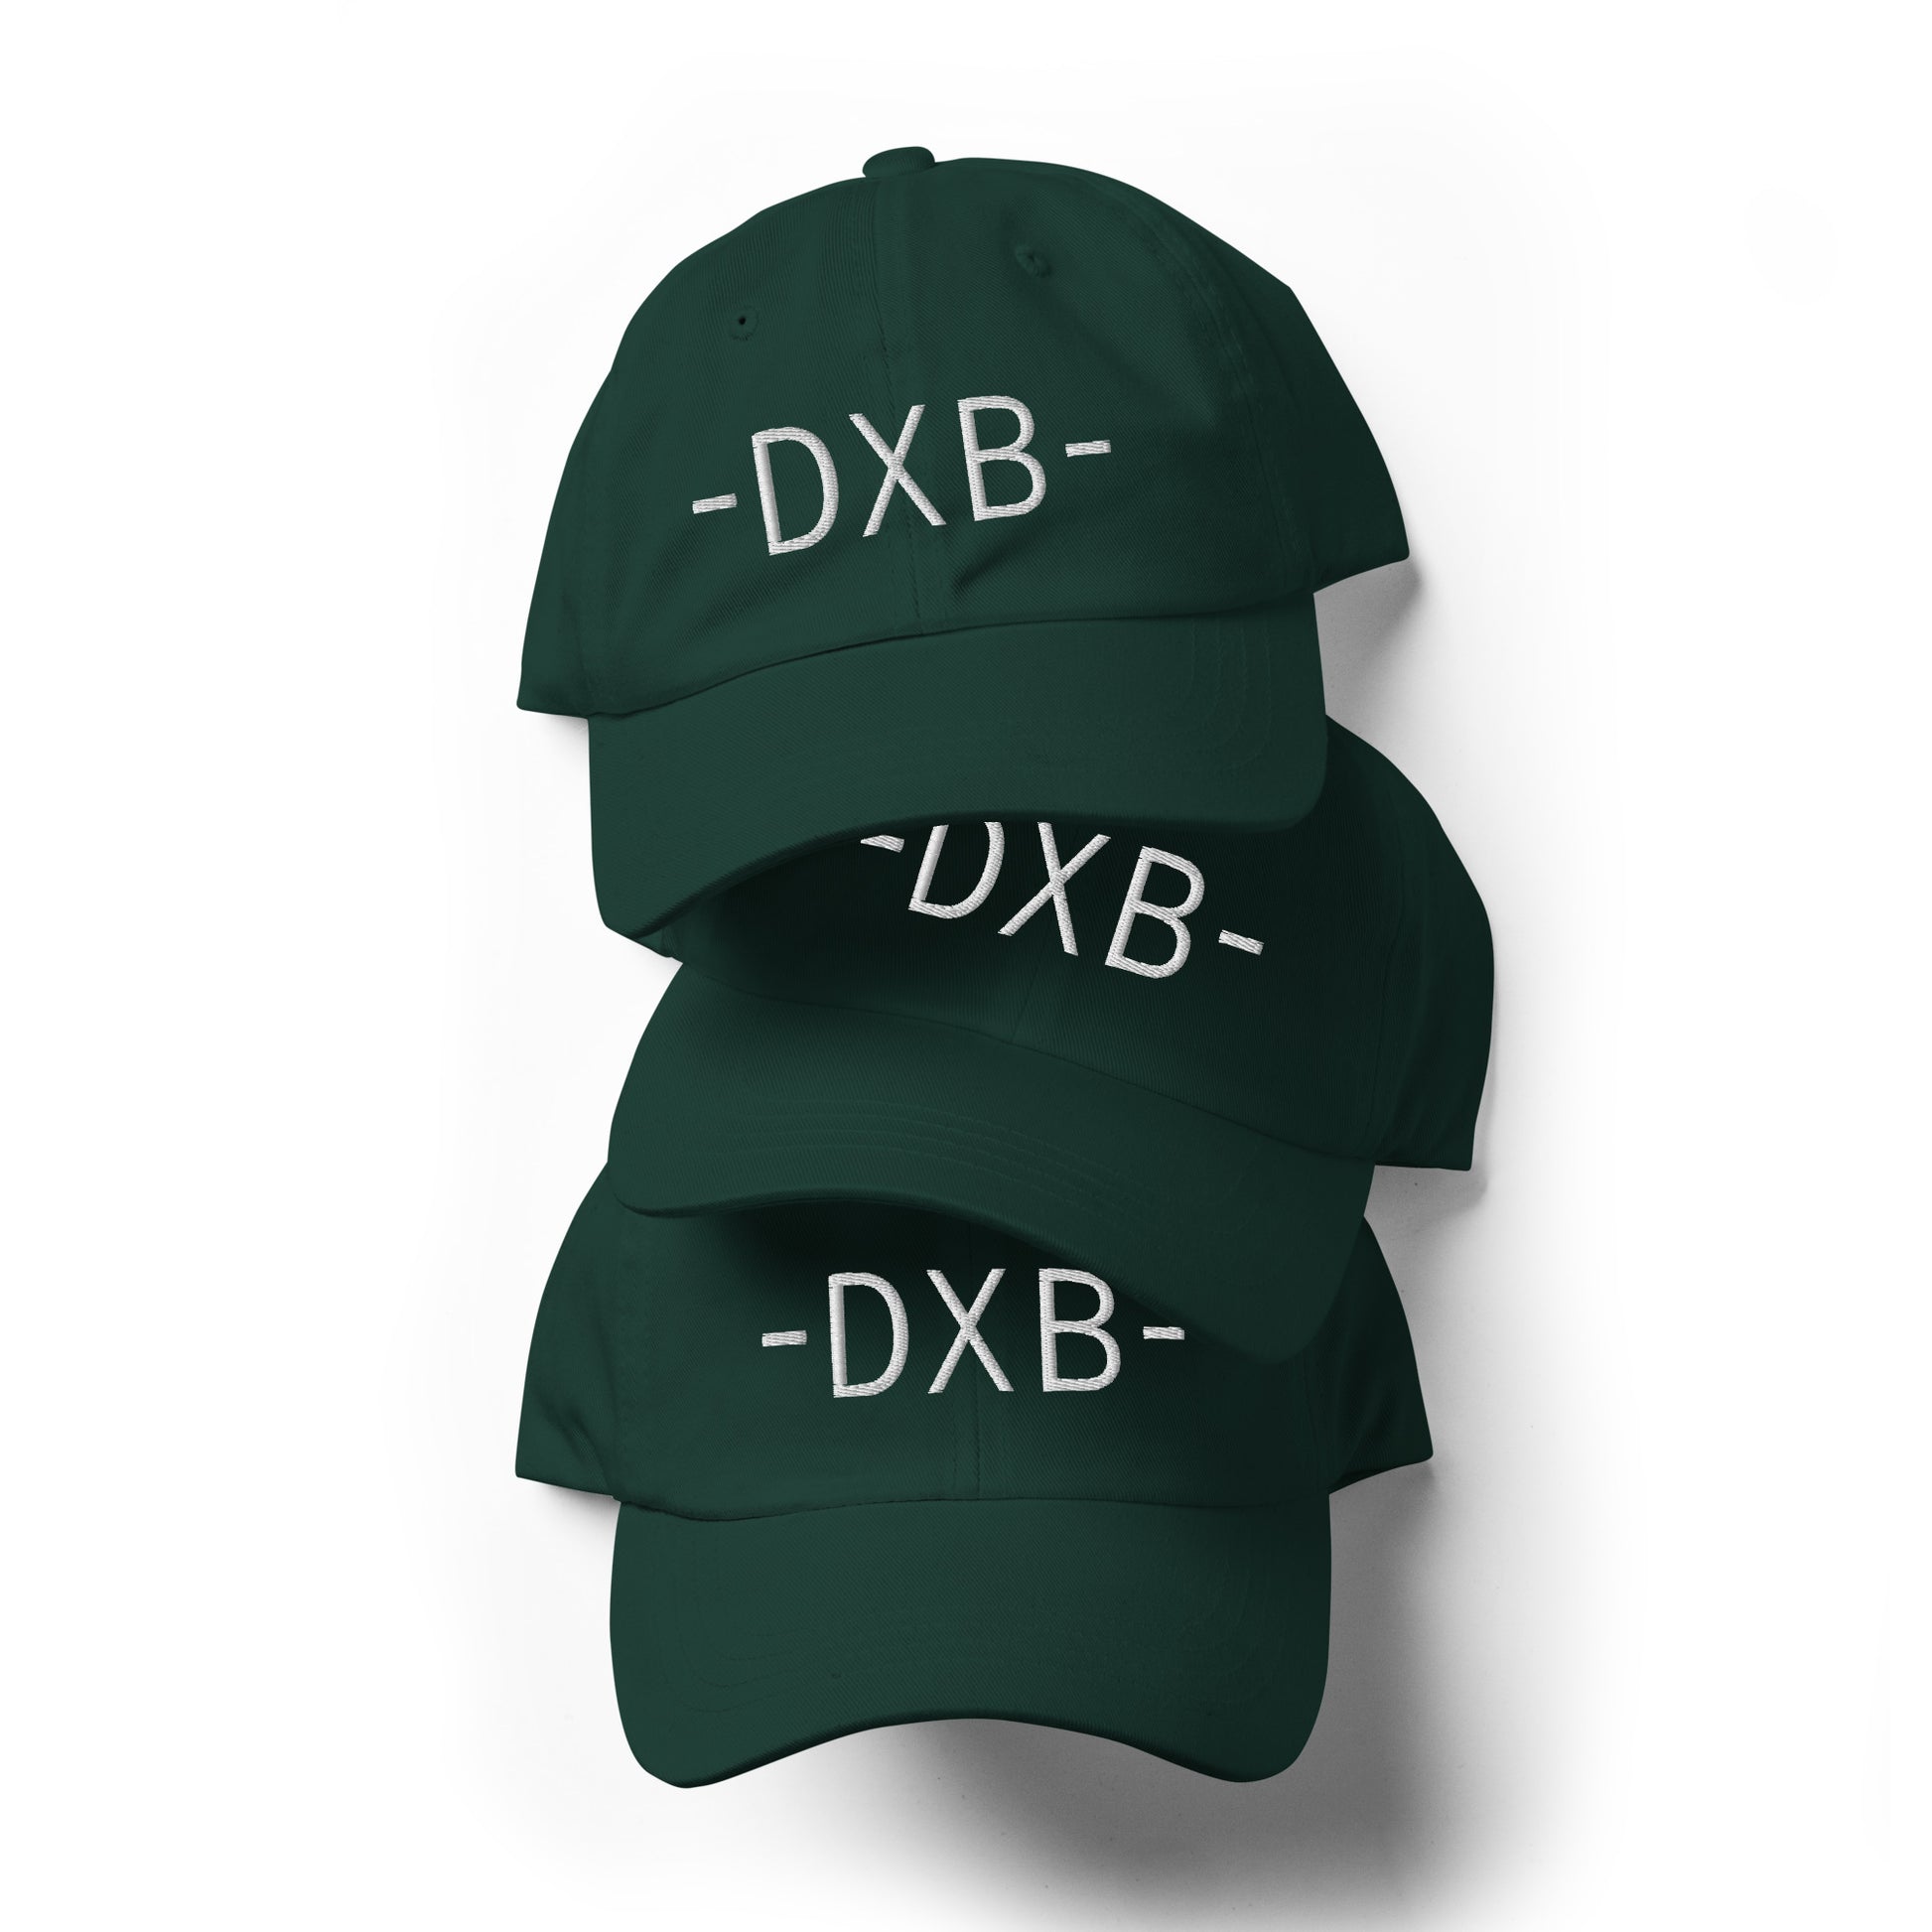 Souvenir Baseball Cap - White • DXB Dubai • YHM Designs - Image 05